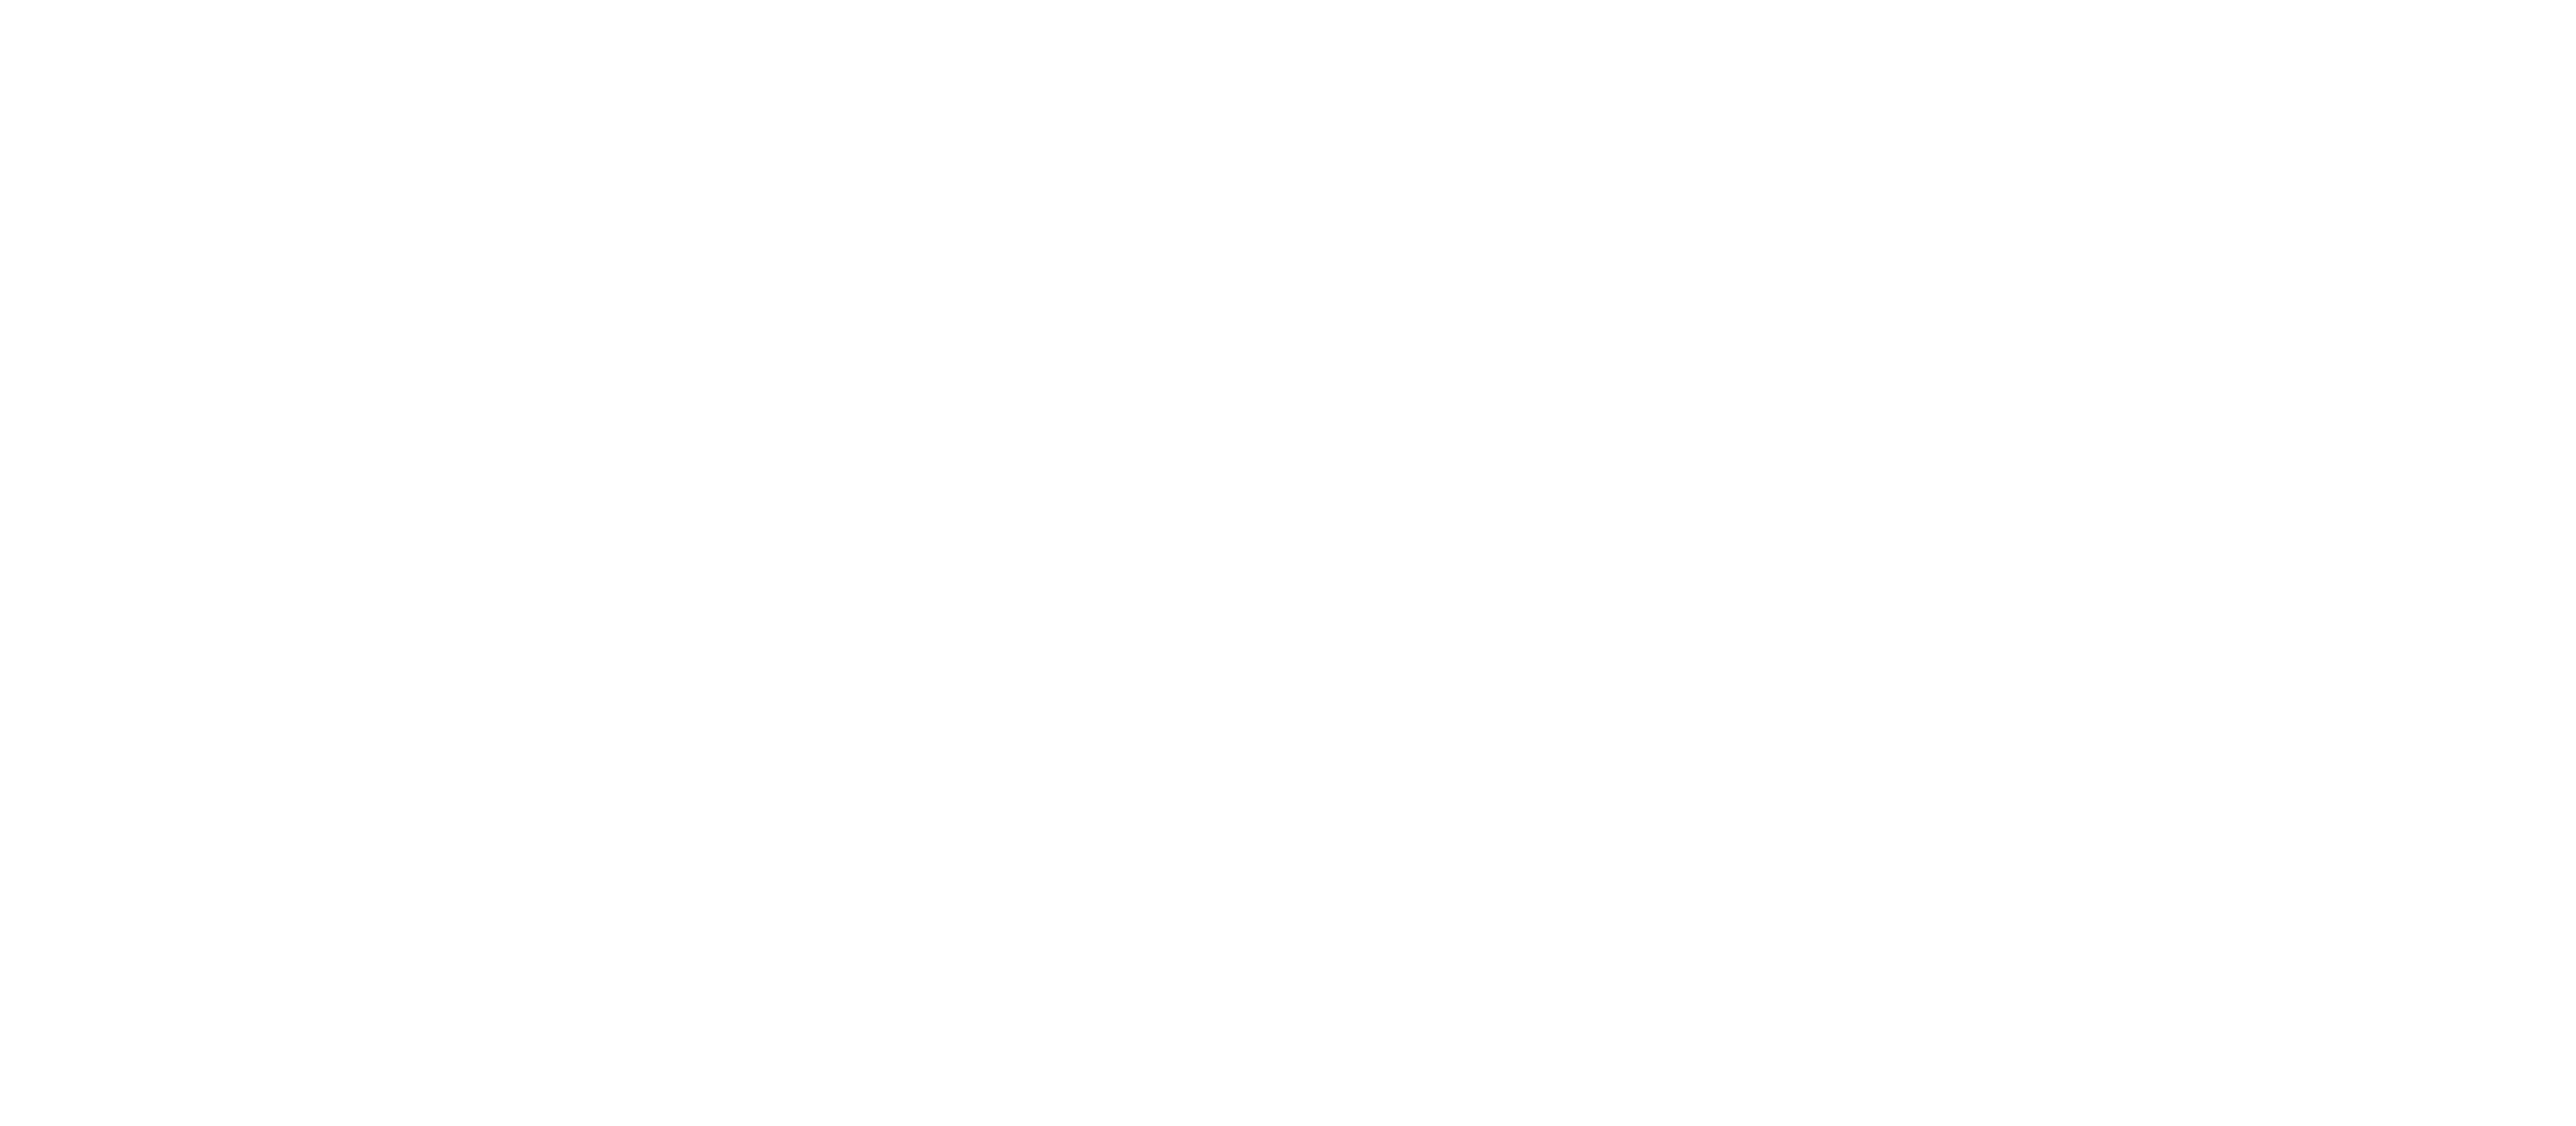 MetTube_logo_white